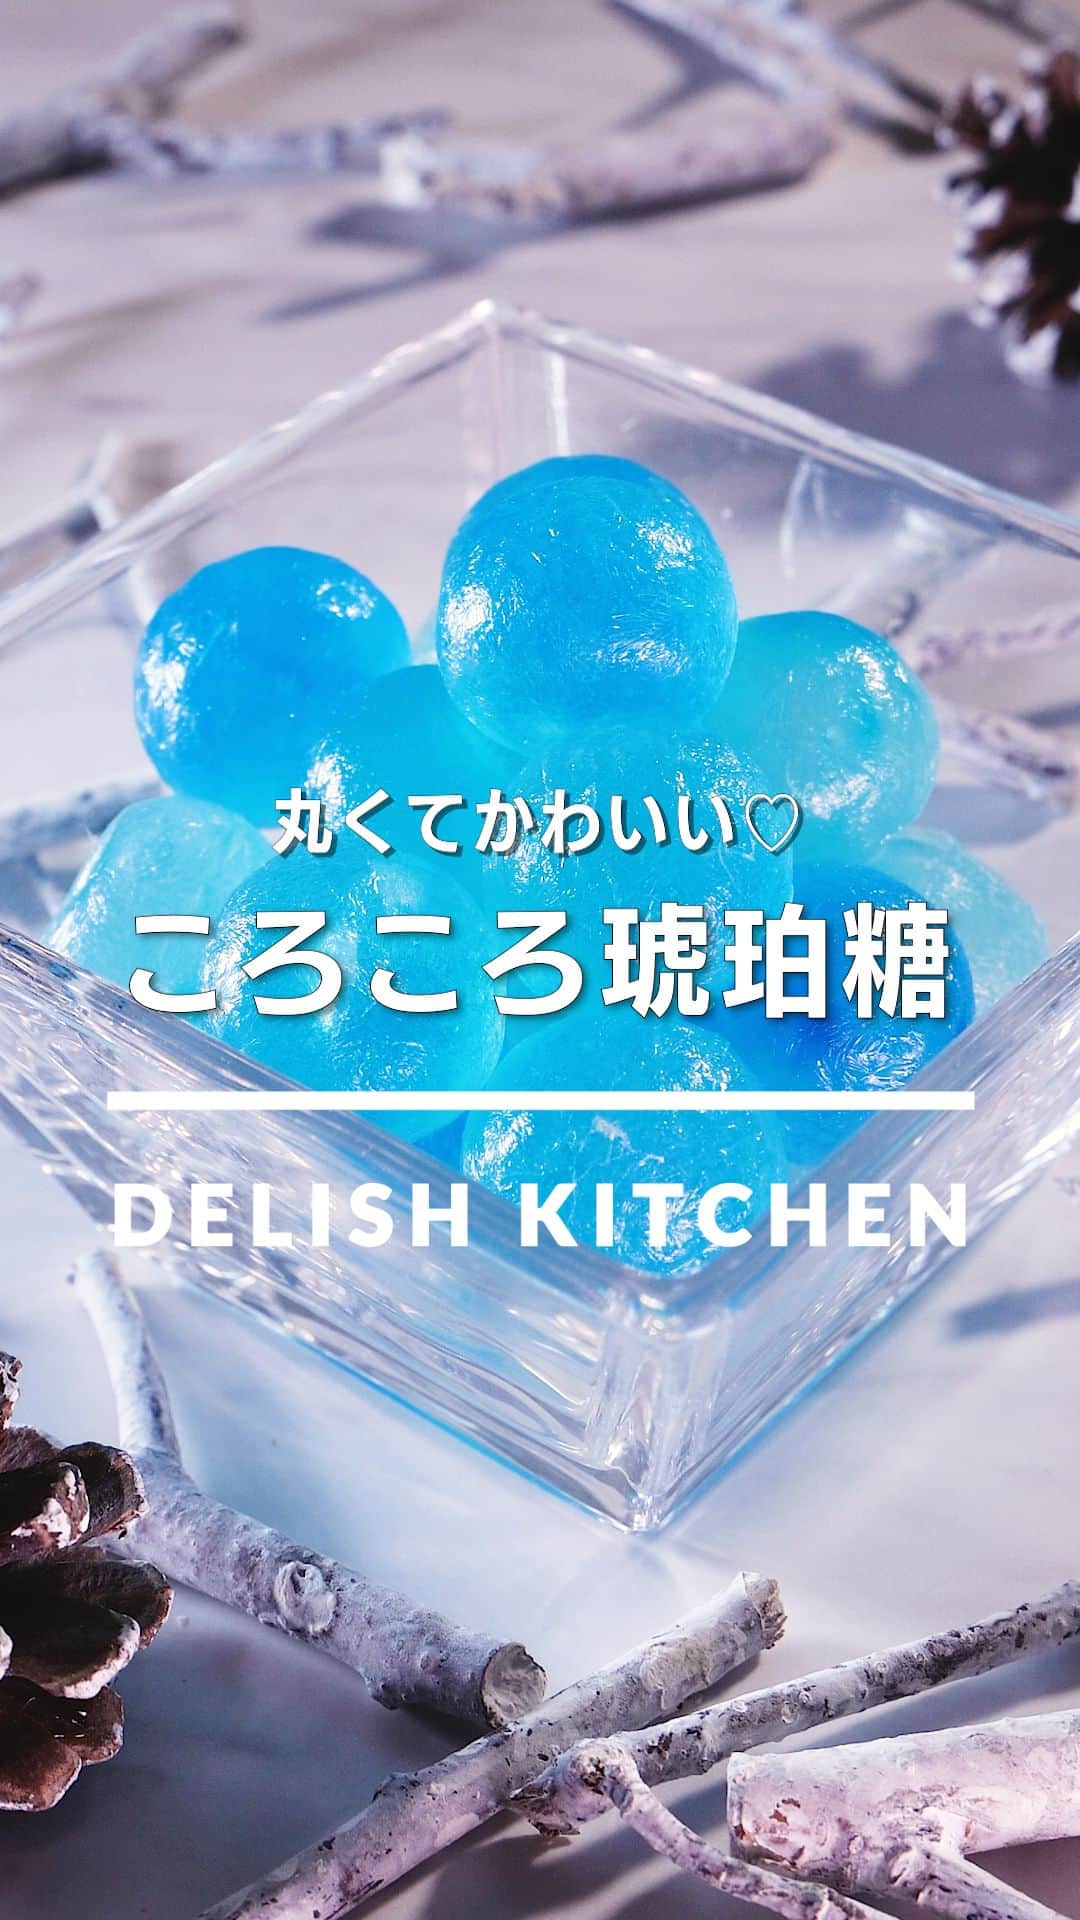 DELISH KITCHENのインスタグラム：「「ころころ琥珀糖」 ⠀⠀ 寒天液をかためて乾燥させて作る琥珀糖。今回は丸い型でかためてころころとかわいく仕上げました♪お好みの色で作ってお楽しみください！ ⠀⠀ ★┈┈┈┈┈┈┈┈┈┈┈┈★ au5Gチャンネルでも、その他様々なDELISH KITCHENの簡単レシピを配信中！ 詳しくは @delishkitchen.tv ハイライトから♪ ★┈┈┈┈┈┈┈┈┈┈┈┈★ ⠀⠀ 動画を一時停止したい場合は、画面を長押ししてください！ ⠀⠀ 動画の詳細が気になる人はアプリで「ころころ琥珀糖」で検索してみてくださいね♪ ⠀⠀ ■材料 (200cc容量の球体ゼリー型2個分) ・グラニュー糖　300g ・水　200cc ・粉寒天　5g ・食用色素[青]　適量 ⠀⠀ ■手順 (1)鍋にグラニュー糖、水、寒天を入れて弱火で加熱し、混ぜながらとろみが出るまで5分ほど煮詰める。 (2)型に5mmほどの高さずつ寒天液を流し入れる。食用色素を少量ずつのせて竹串などでひと混ぜする。残りの寒天液を型の側面の半分の高さになるまで流し入れ、ふたをする。冷蔵庫で30分以上冷やし固める。(お好みの食用色素を使用してください。) (3)型から取り出し、クッキングシートにのせる。風通しの良い場所におき、4〜5日乾燥させる。(冷蔵庫や、ほこりの被らない風通しの良い冷暗所で乾燥させてください。) ⠀⠀ #デリッシュキッチン #DELISHKITCHEN #料理 #レシピ #時短 #おうちごはん #手料理 #簡単レシピ #手作りごはん #今日のごはん #おうちカフェ #琥珀糖 #キラキラ」